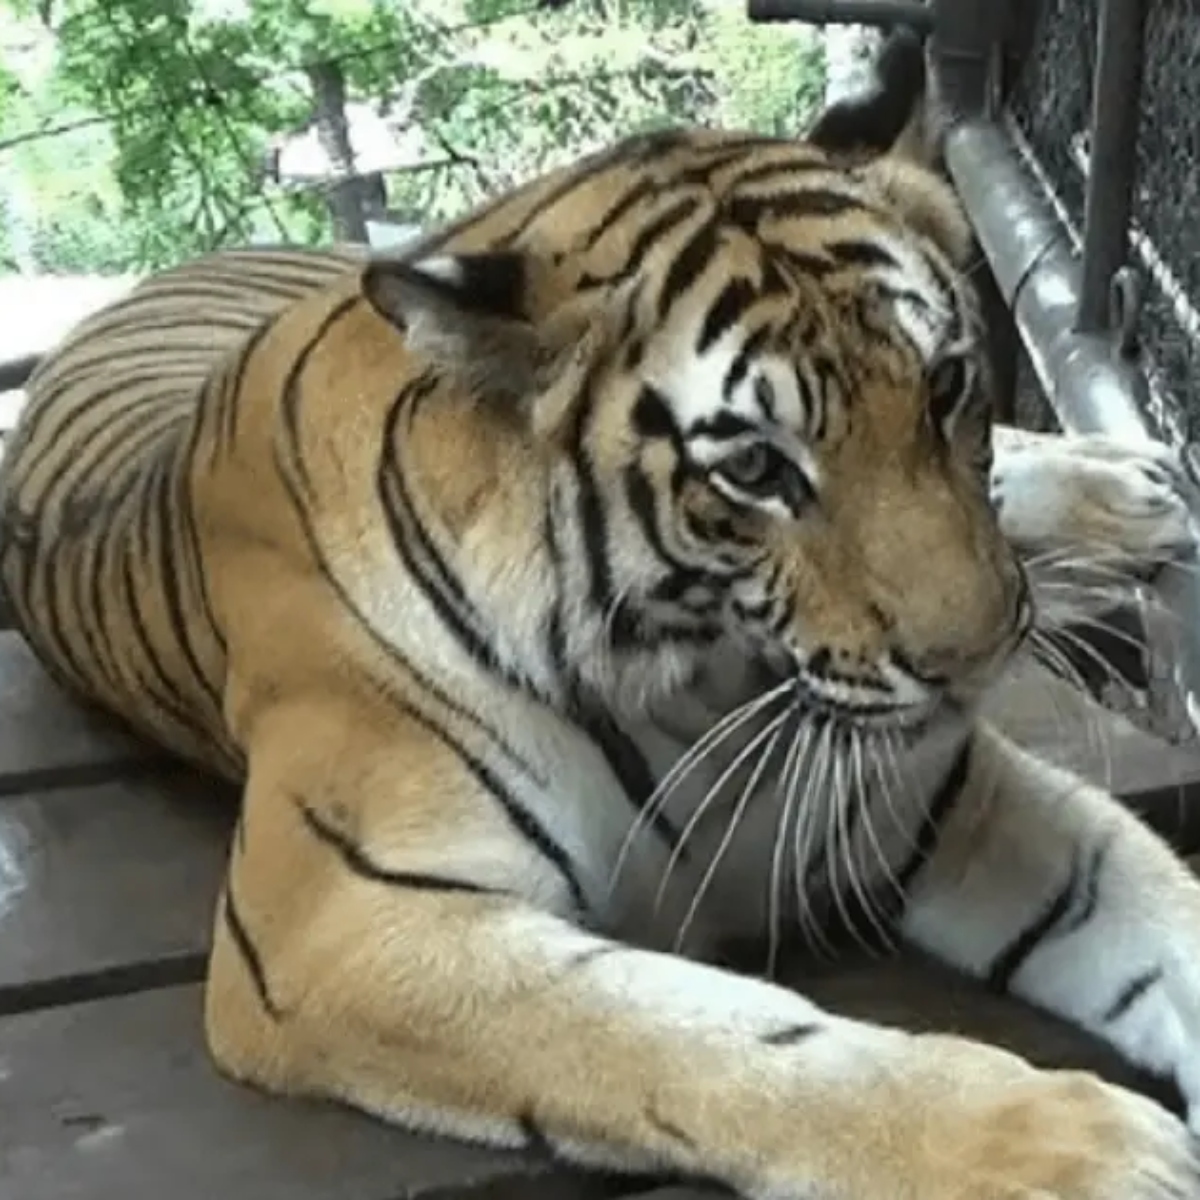  Tigre é visto com sapato na boca em zoológico e polícia descobre corpo 